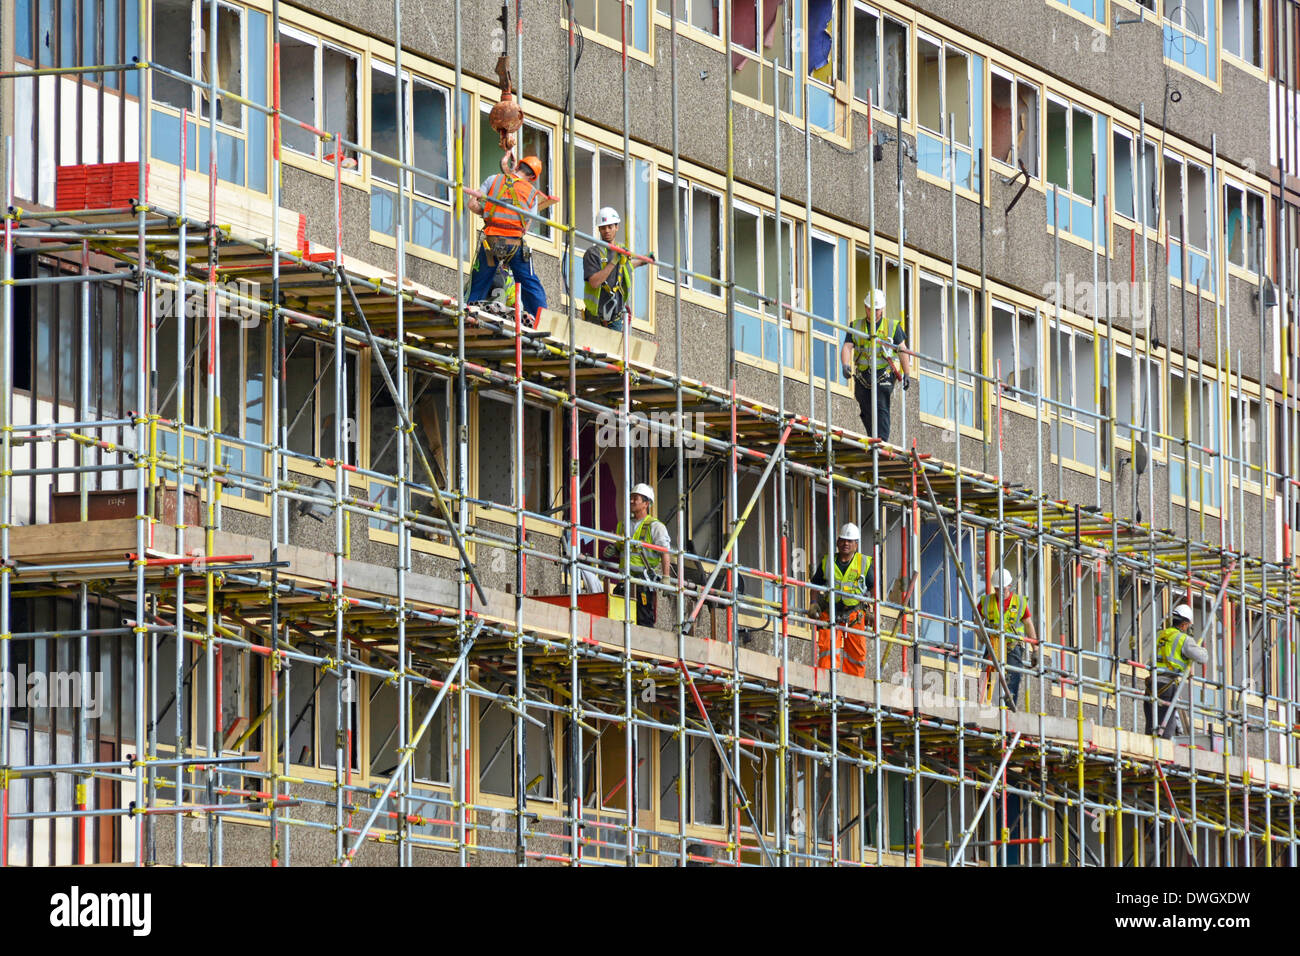 Scaffolders travaillant sur l'une des grande hauteur vide Heygate Estate blocs de logements sociaux en vue de démolition Southwark London England UK Sud Banque D'Images